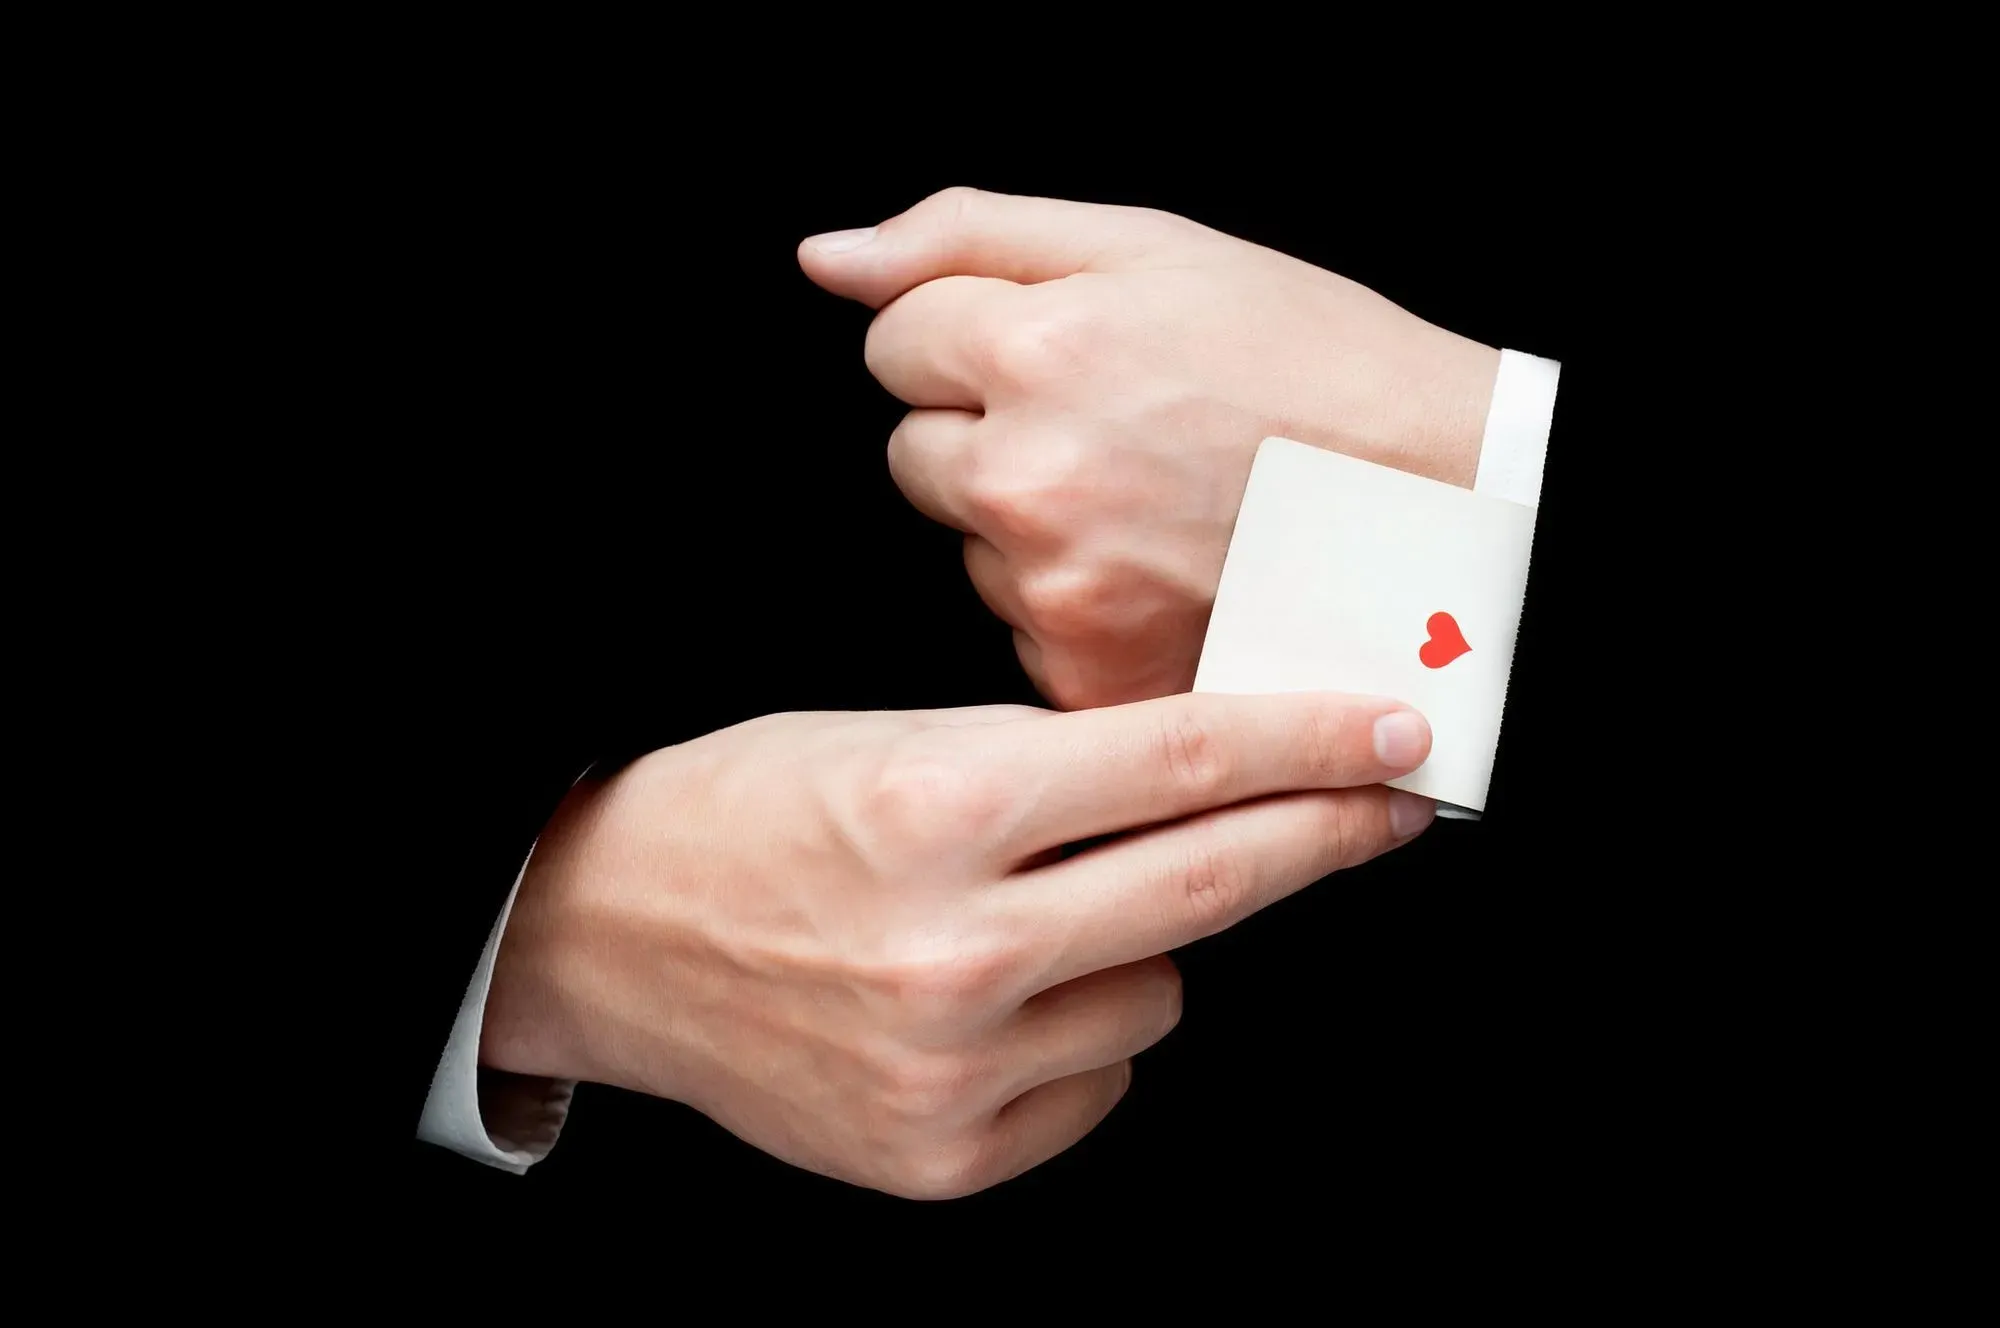 magician hiding a card up their sleeve